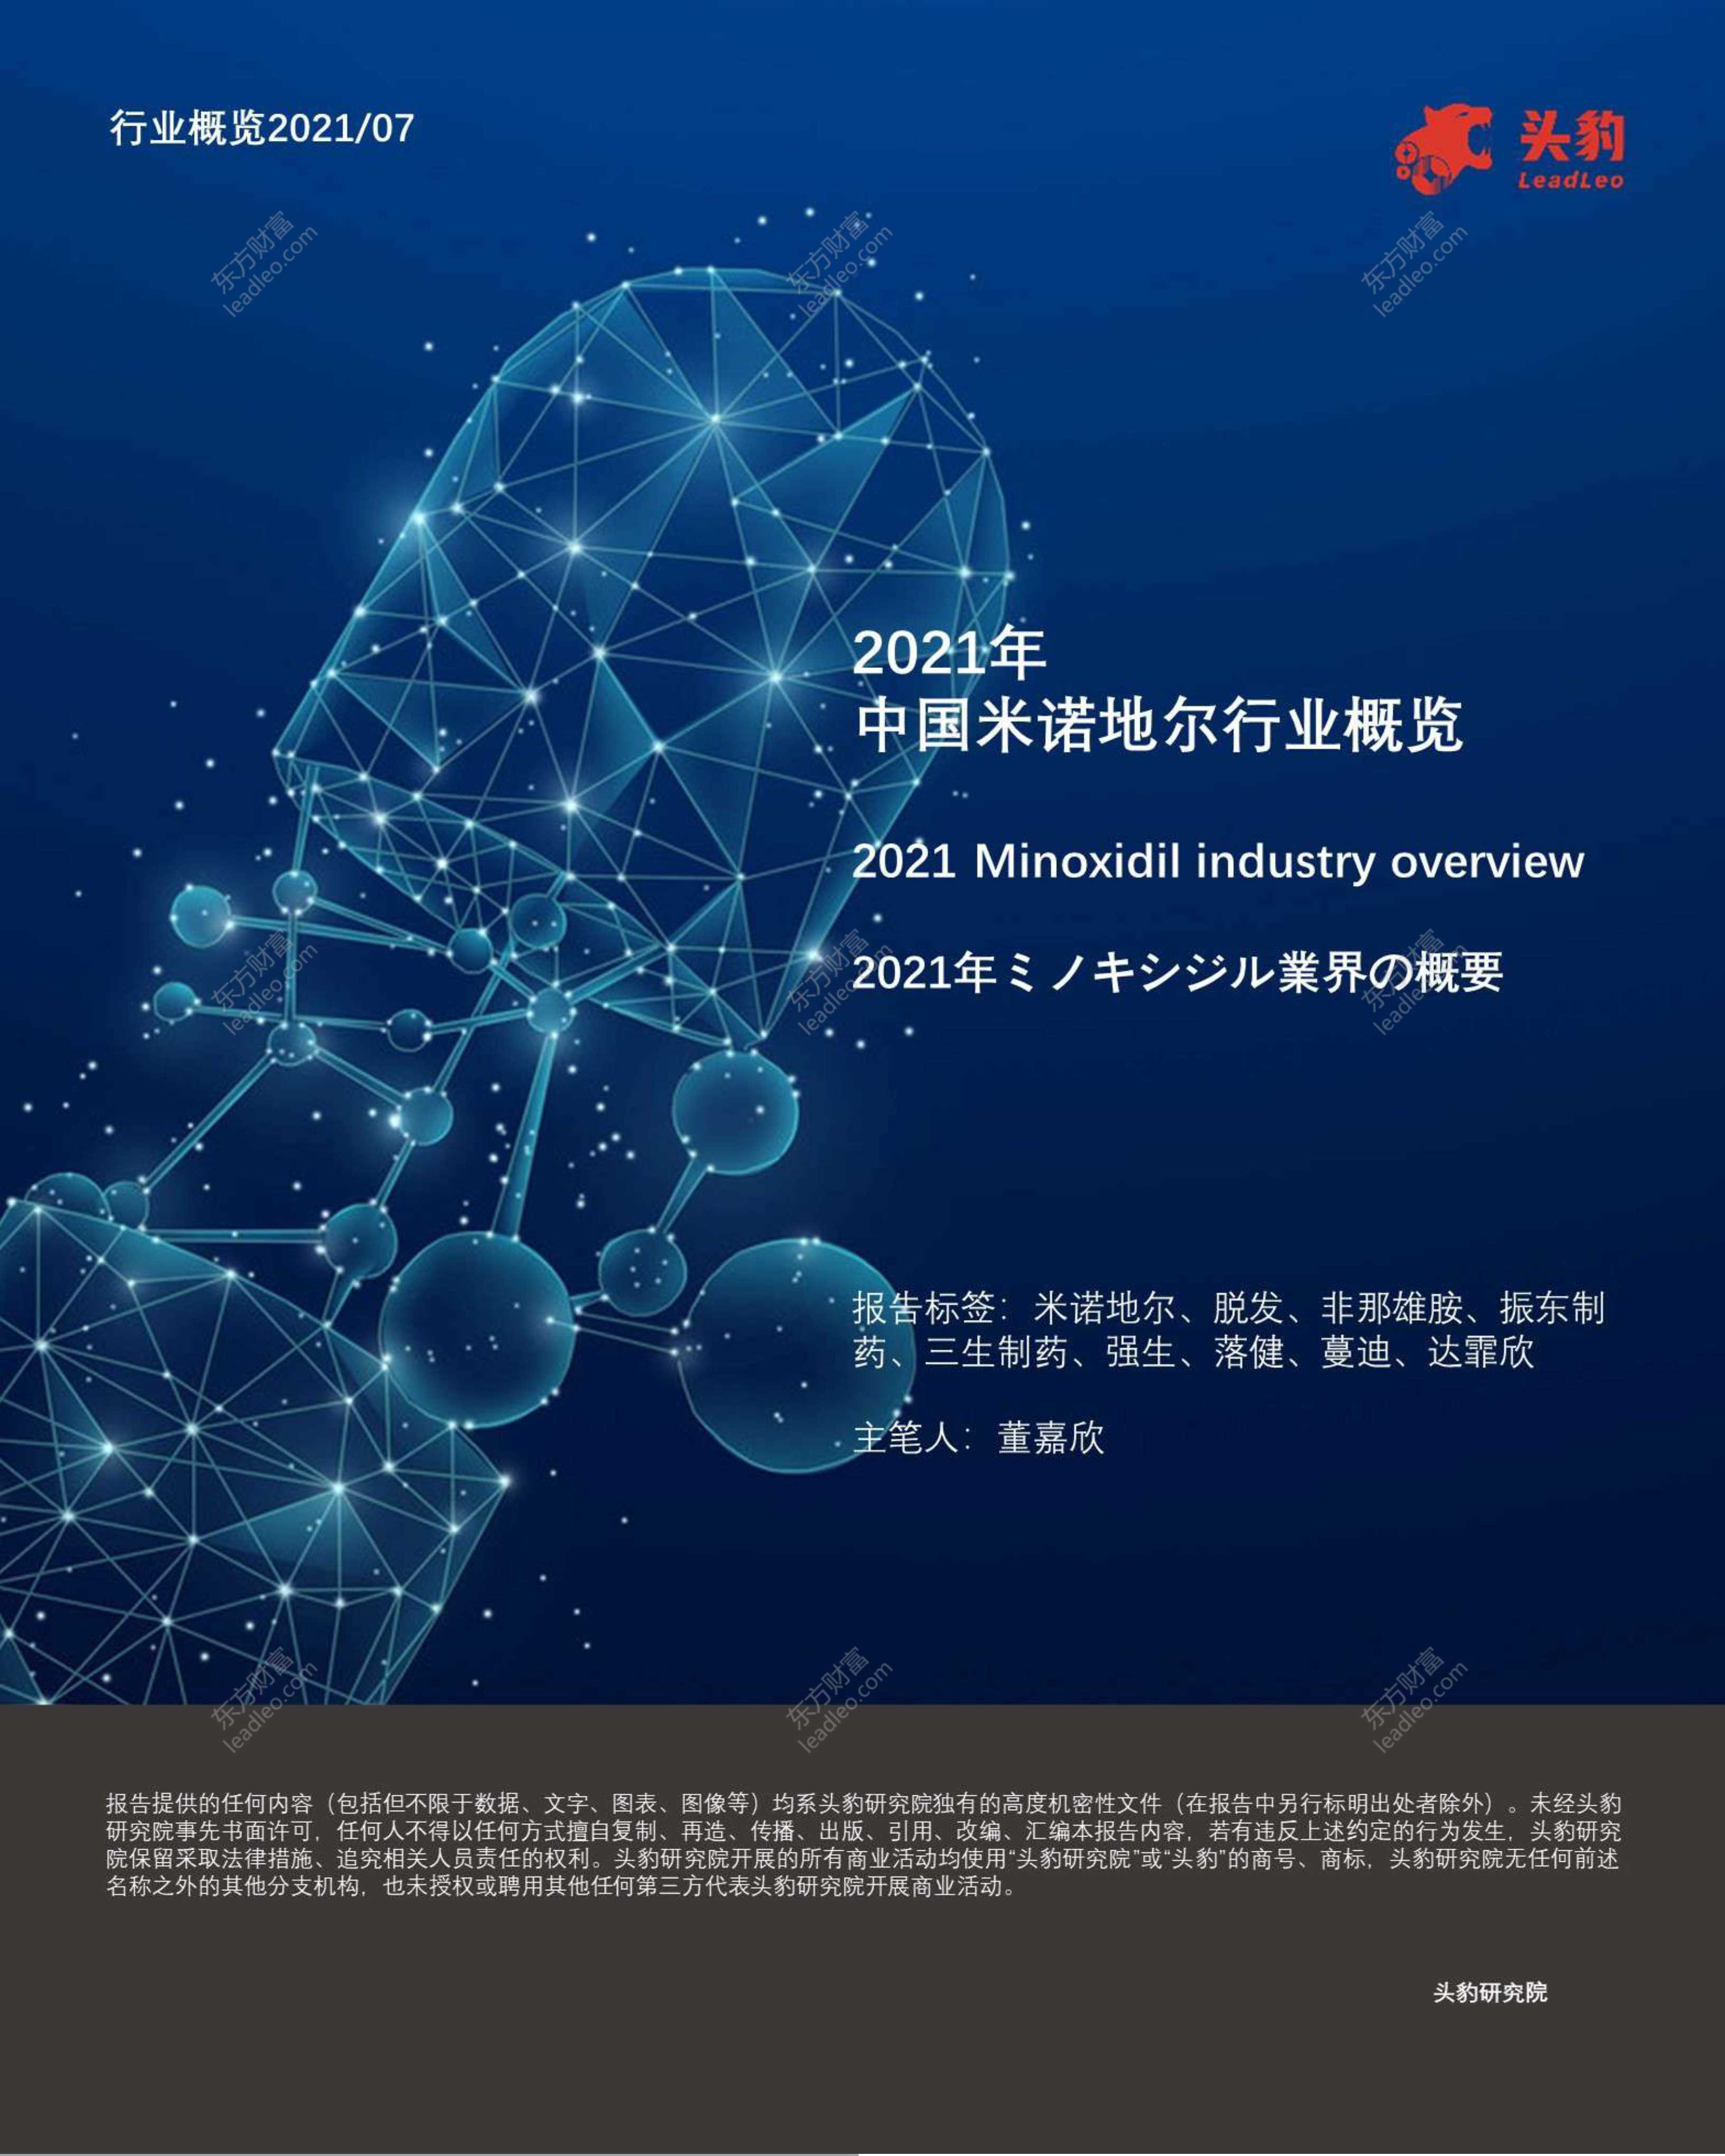 头豹研究院-2021年中国米诺地尔行业概览-2021.09-36页